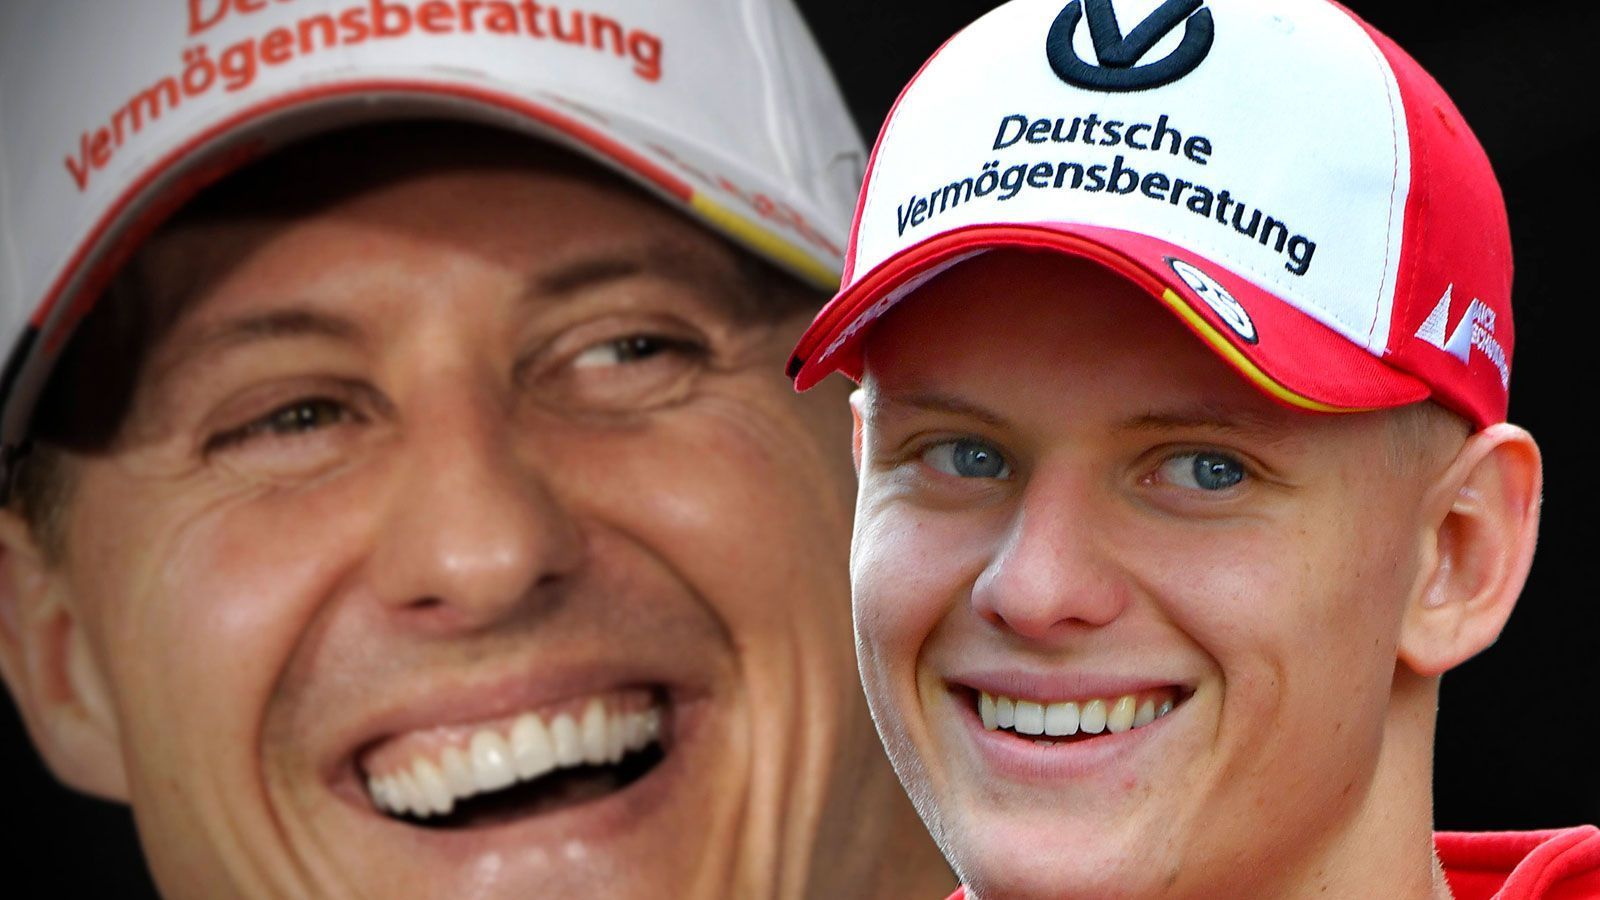 
                <strong>Warum testet der Haas-Pilot im Ferrari?</strong><br>
                Obwohl Schumacher für das Ferrari-Kundenteam Haas an den Start geht, bekommt er als Mitglied der Ferrari-Junior-Akademie weiterhin Unterstützung von dem Rennstall seines berühmten Vaters. Die Ausfahrt ist ein Teil seiner Saisonvorbereitung. Sein Vater Michael, der fünf seiner sieben WM-Titel mit Ferrari holte, hat in Fiorano unzählige Testrunden gedreht. Daher sei es "sehr speziell und emotional", dort nun selbst zu fahren, sagte der Formel-2-Champion: "Es ist einer der schönsten Plätze, um ein Formel-1-Auto fahren zu sehen. Es ist keine große Strecke, aber mit viel Historie verbunden."
              